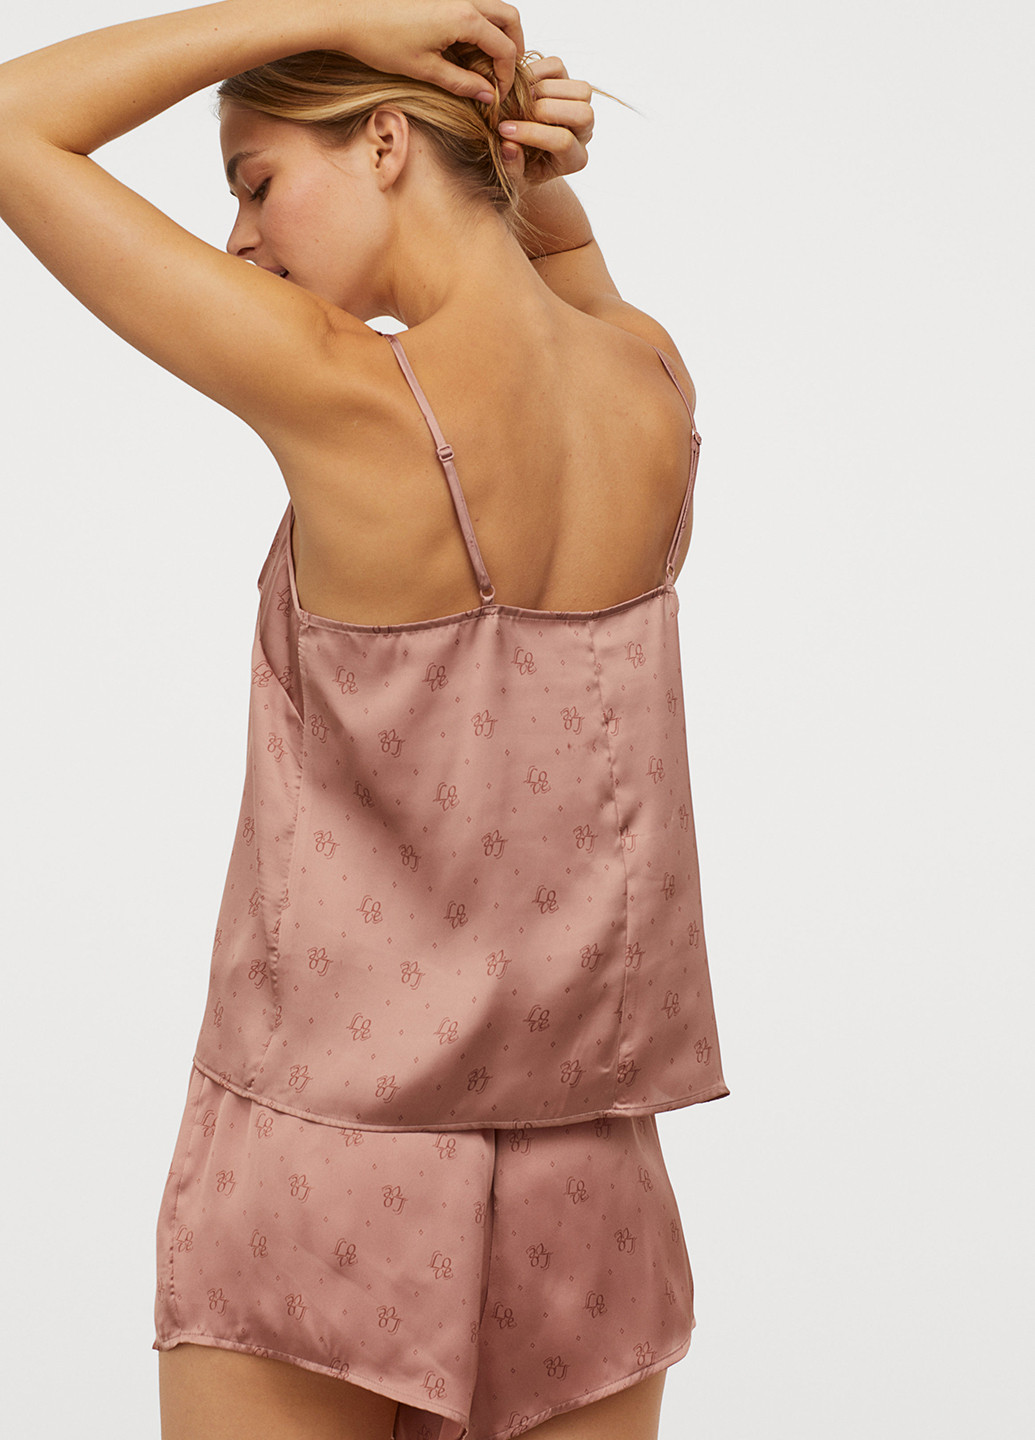 Бежевая всесезон пижама (майка, шорты) майка + шорты H&M